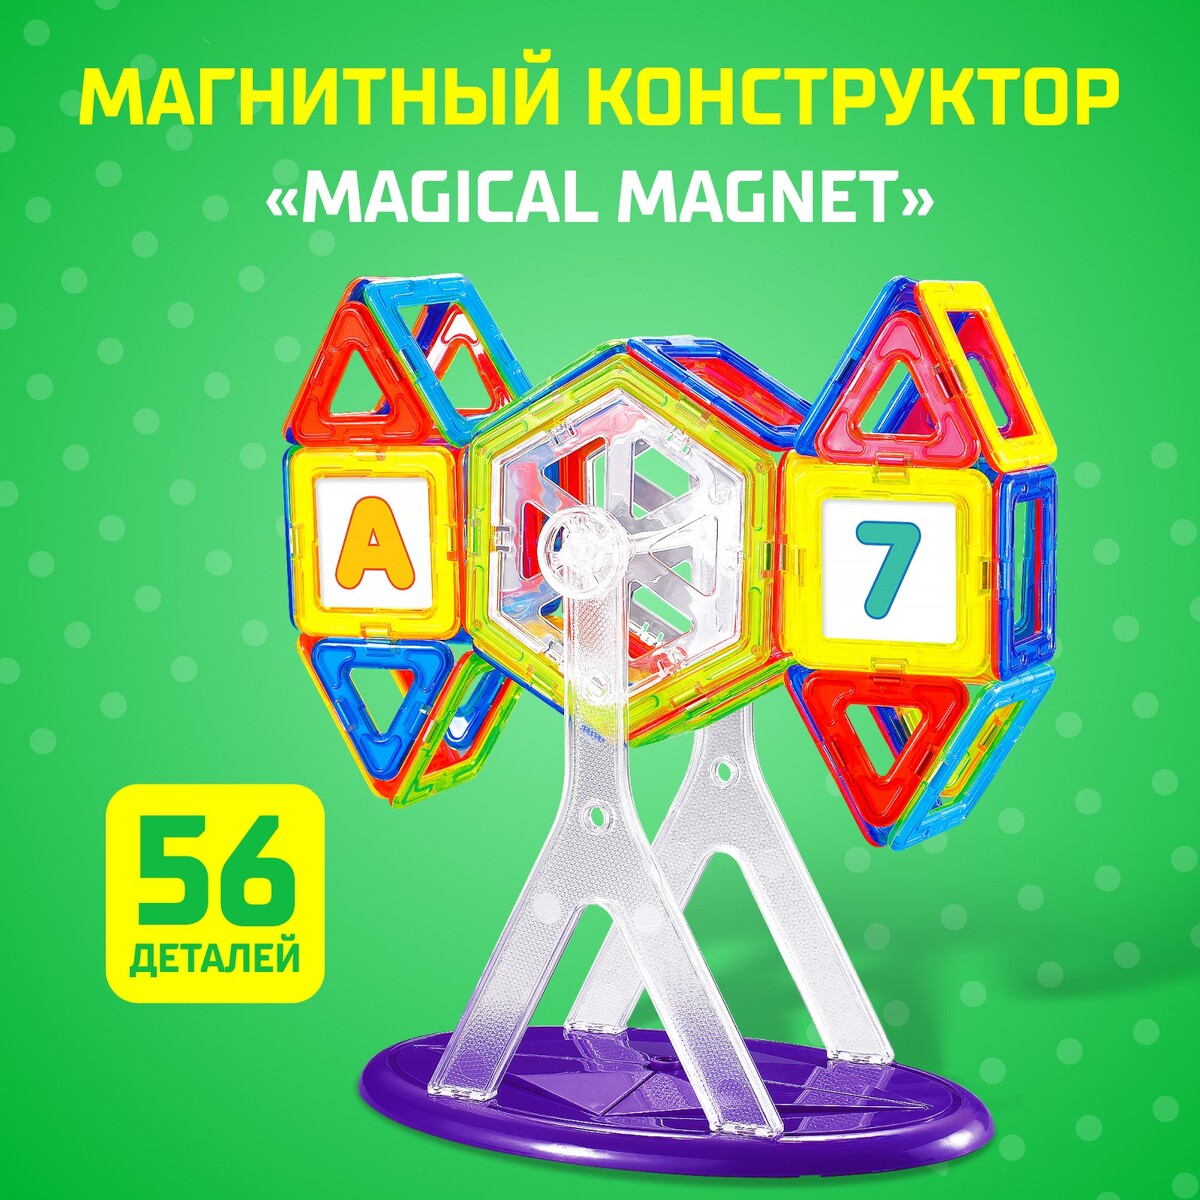 Магнитный конструктор magical magnet, 56 деталей, детали матовые конструктор market toys lab mould king 14001 пистолет пулемет mp5 783 детали